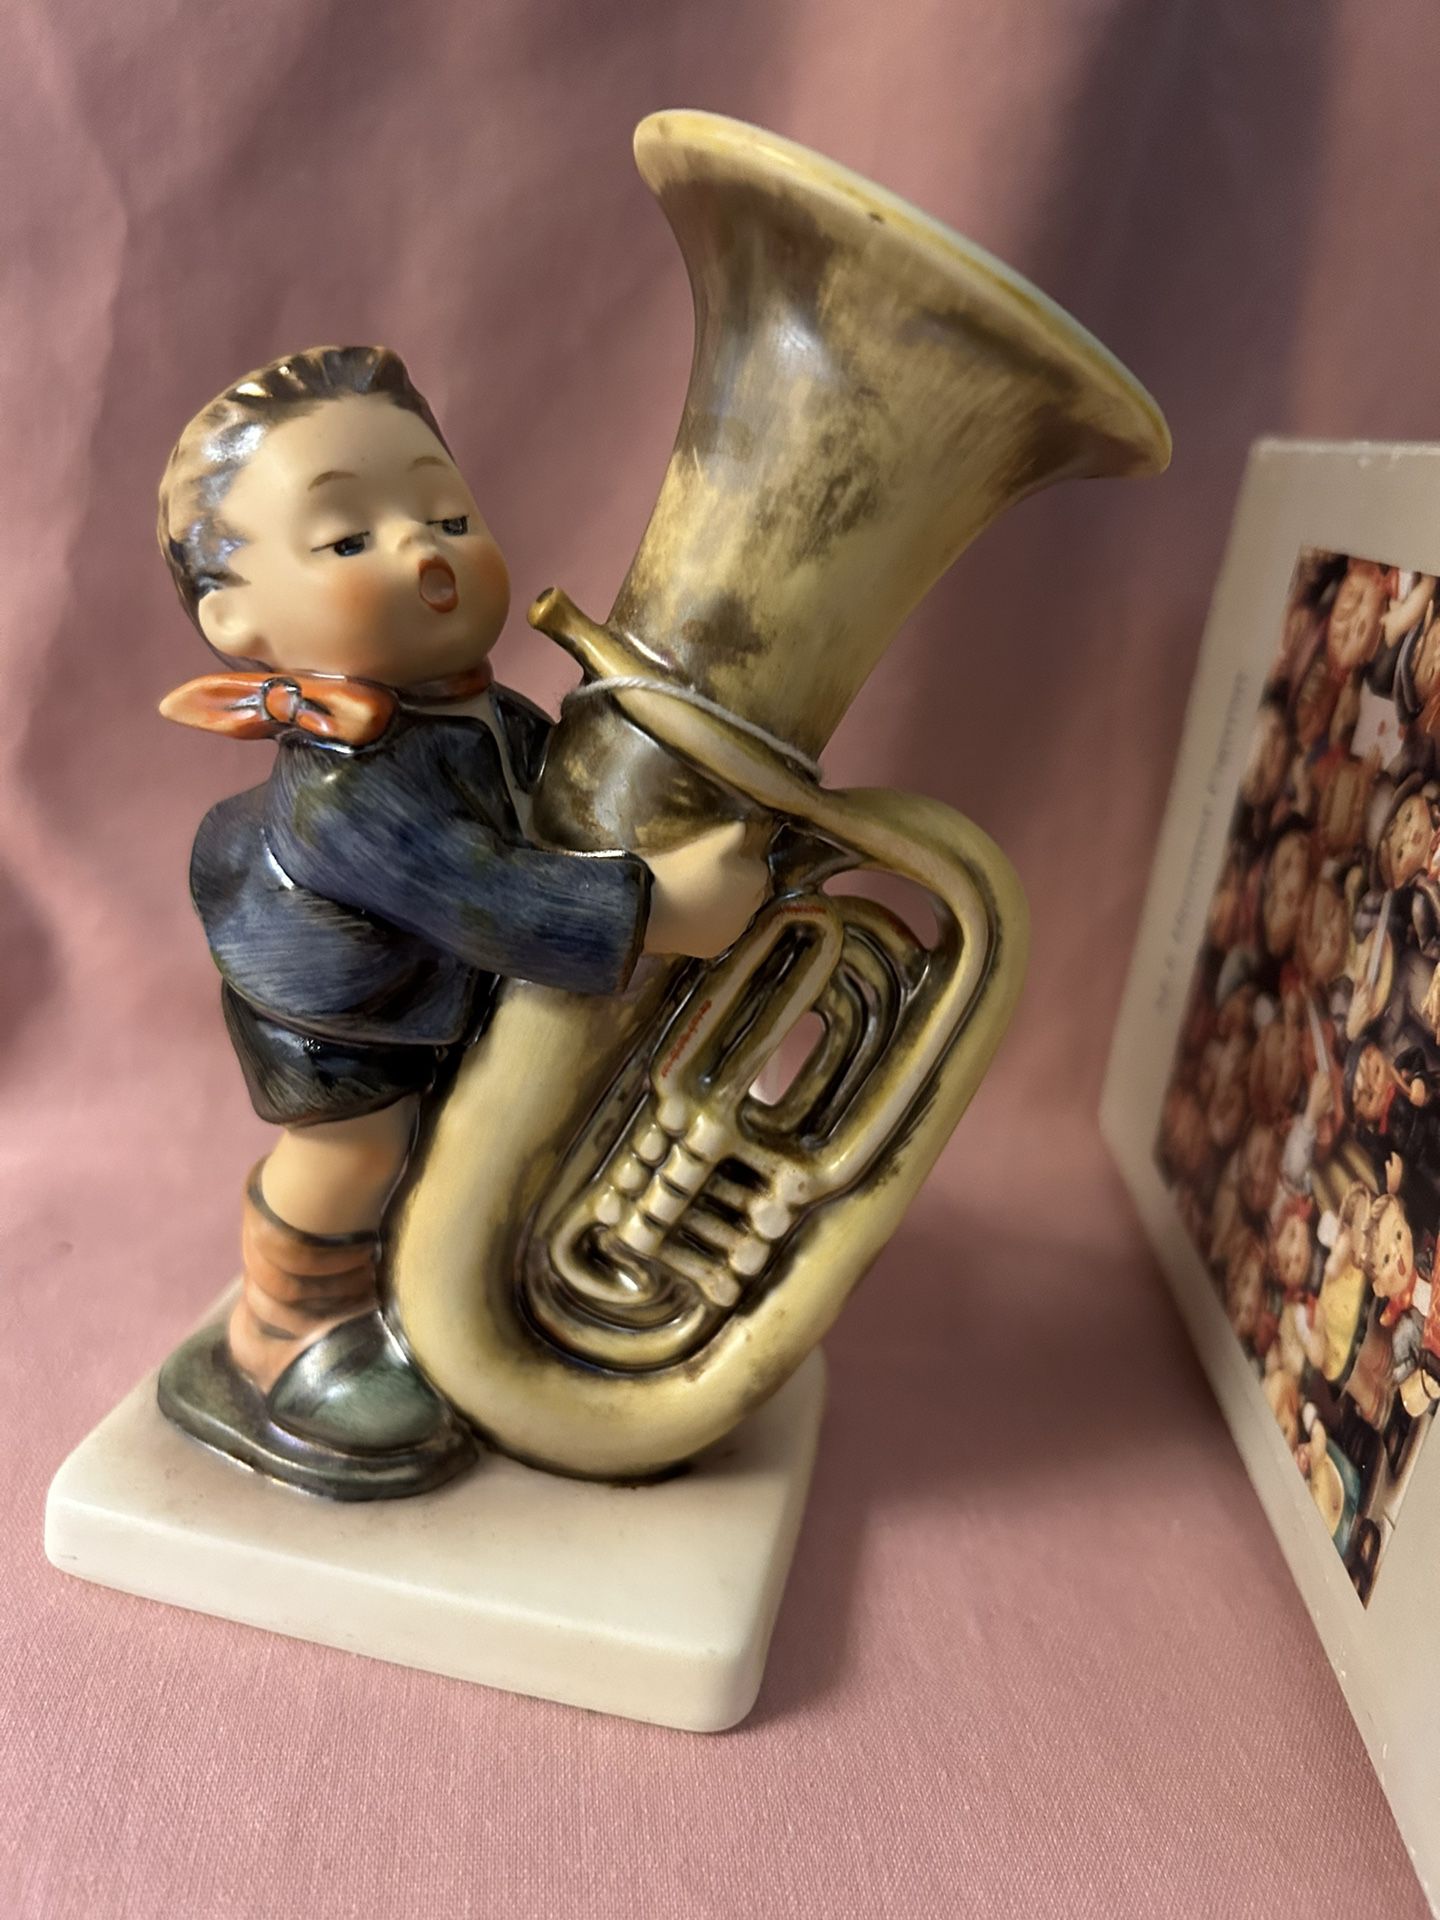 The Tuba Player